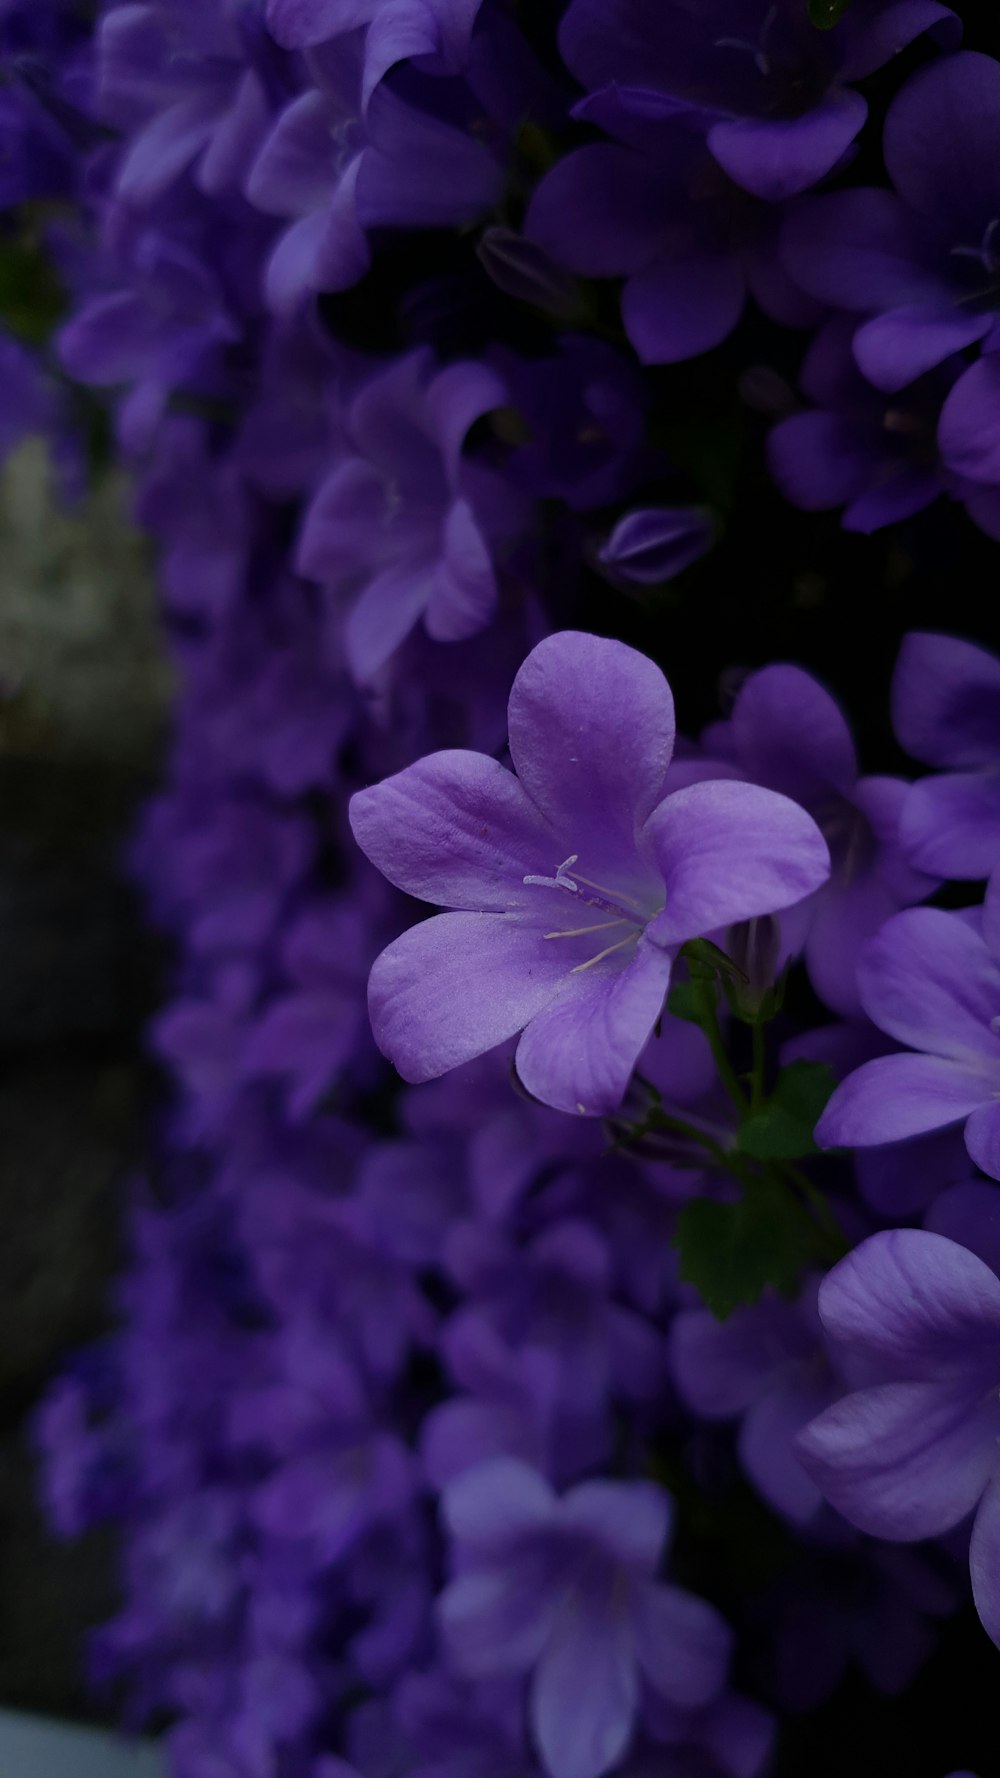 Hãy khám phá nét đẹp tuyệt diệu của hoa tím thông qua hình ảnh hoa tím đẹp. Với sắc tím cổ điển và mùi hương quyến rũ, bức ảnh sẽ đem đến cho bạn những cảm nhận mới lạ, tươi trẻ và đầy sức sống.